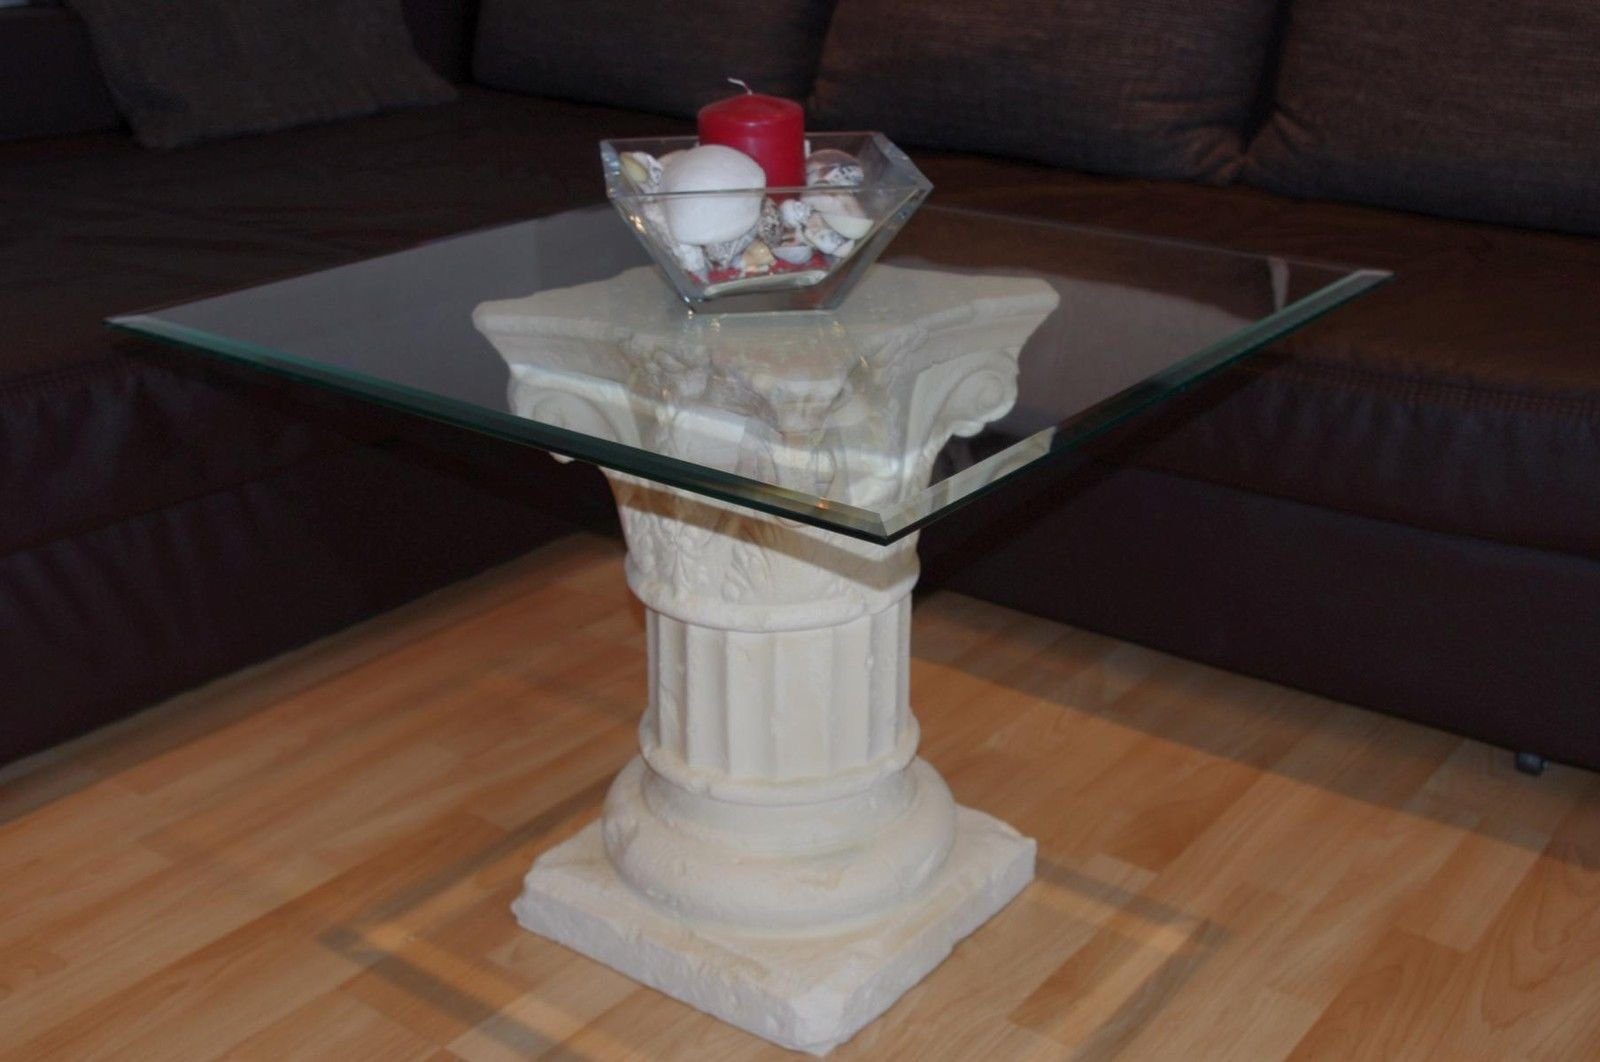 Antikes Wohndesign Couchtisch Glastisch 60cmx60cm Couchtisch Beistelltisch Wohnzimmertisch Blumenstä